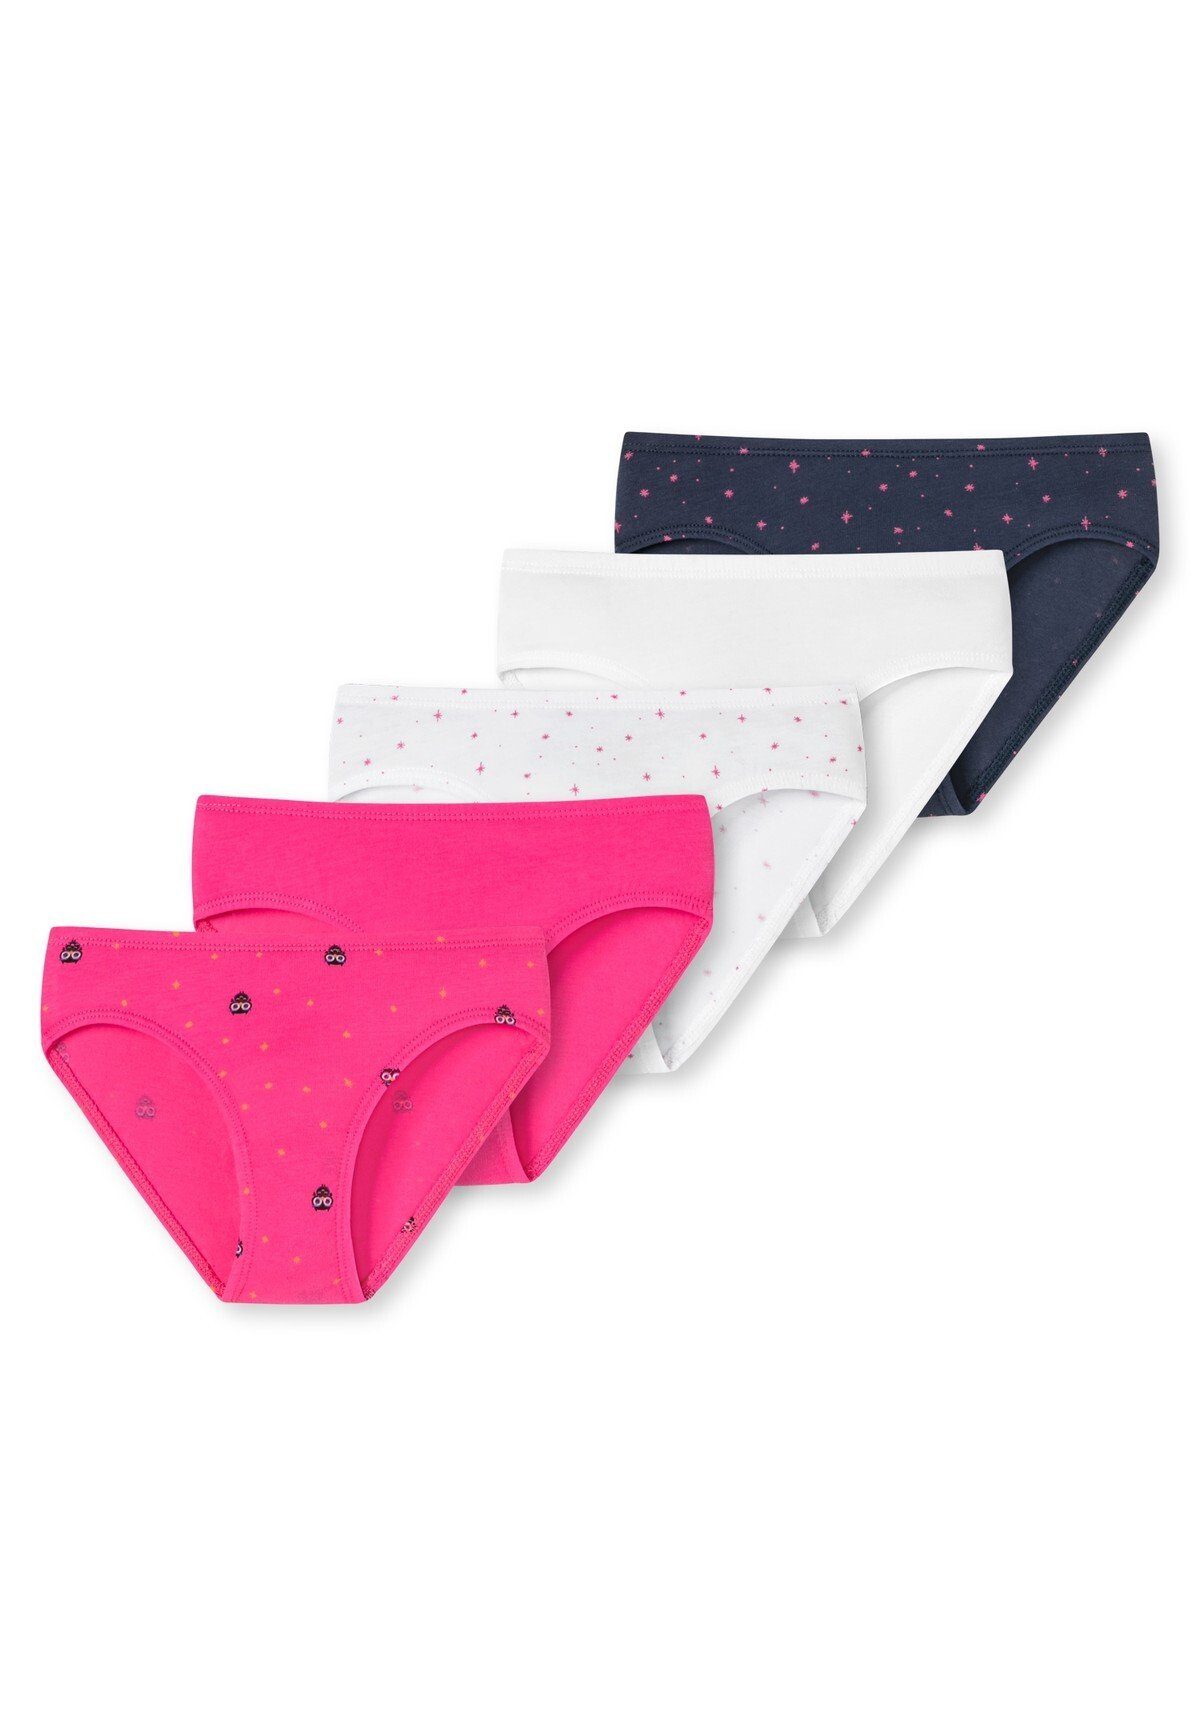 Slips Shorts Mädchen Slip Pants, - 5er Schiesser Pink/Weiß/Dunkelblau Pack Unterhose,